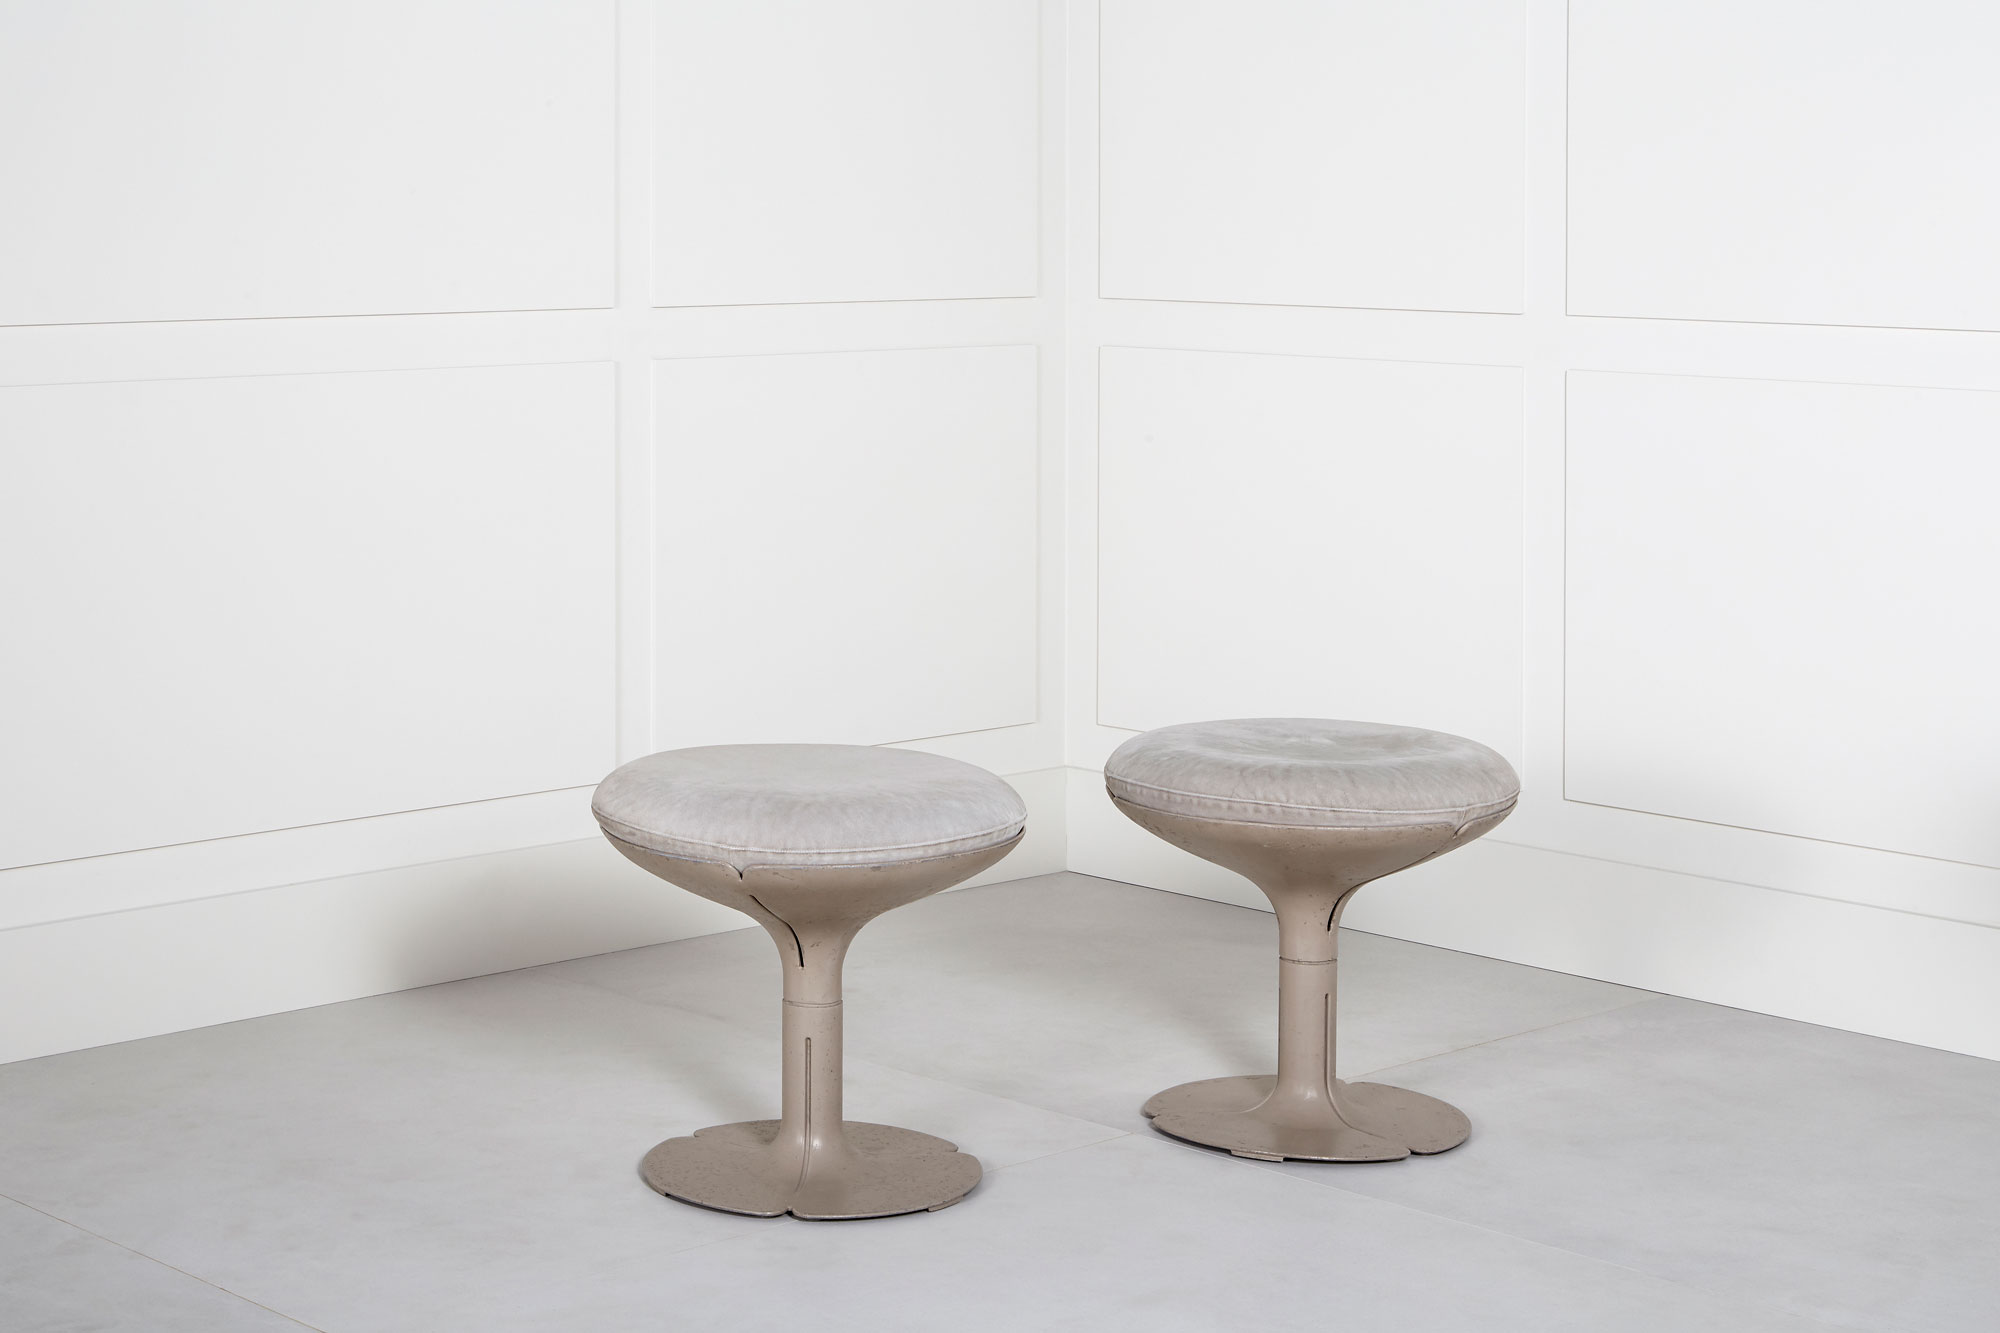 Pierre Paulin, Pair of “Elysée” stools, vue 01